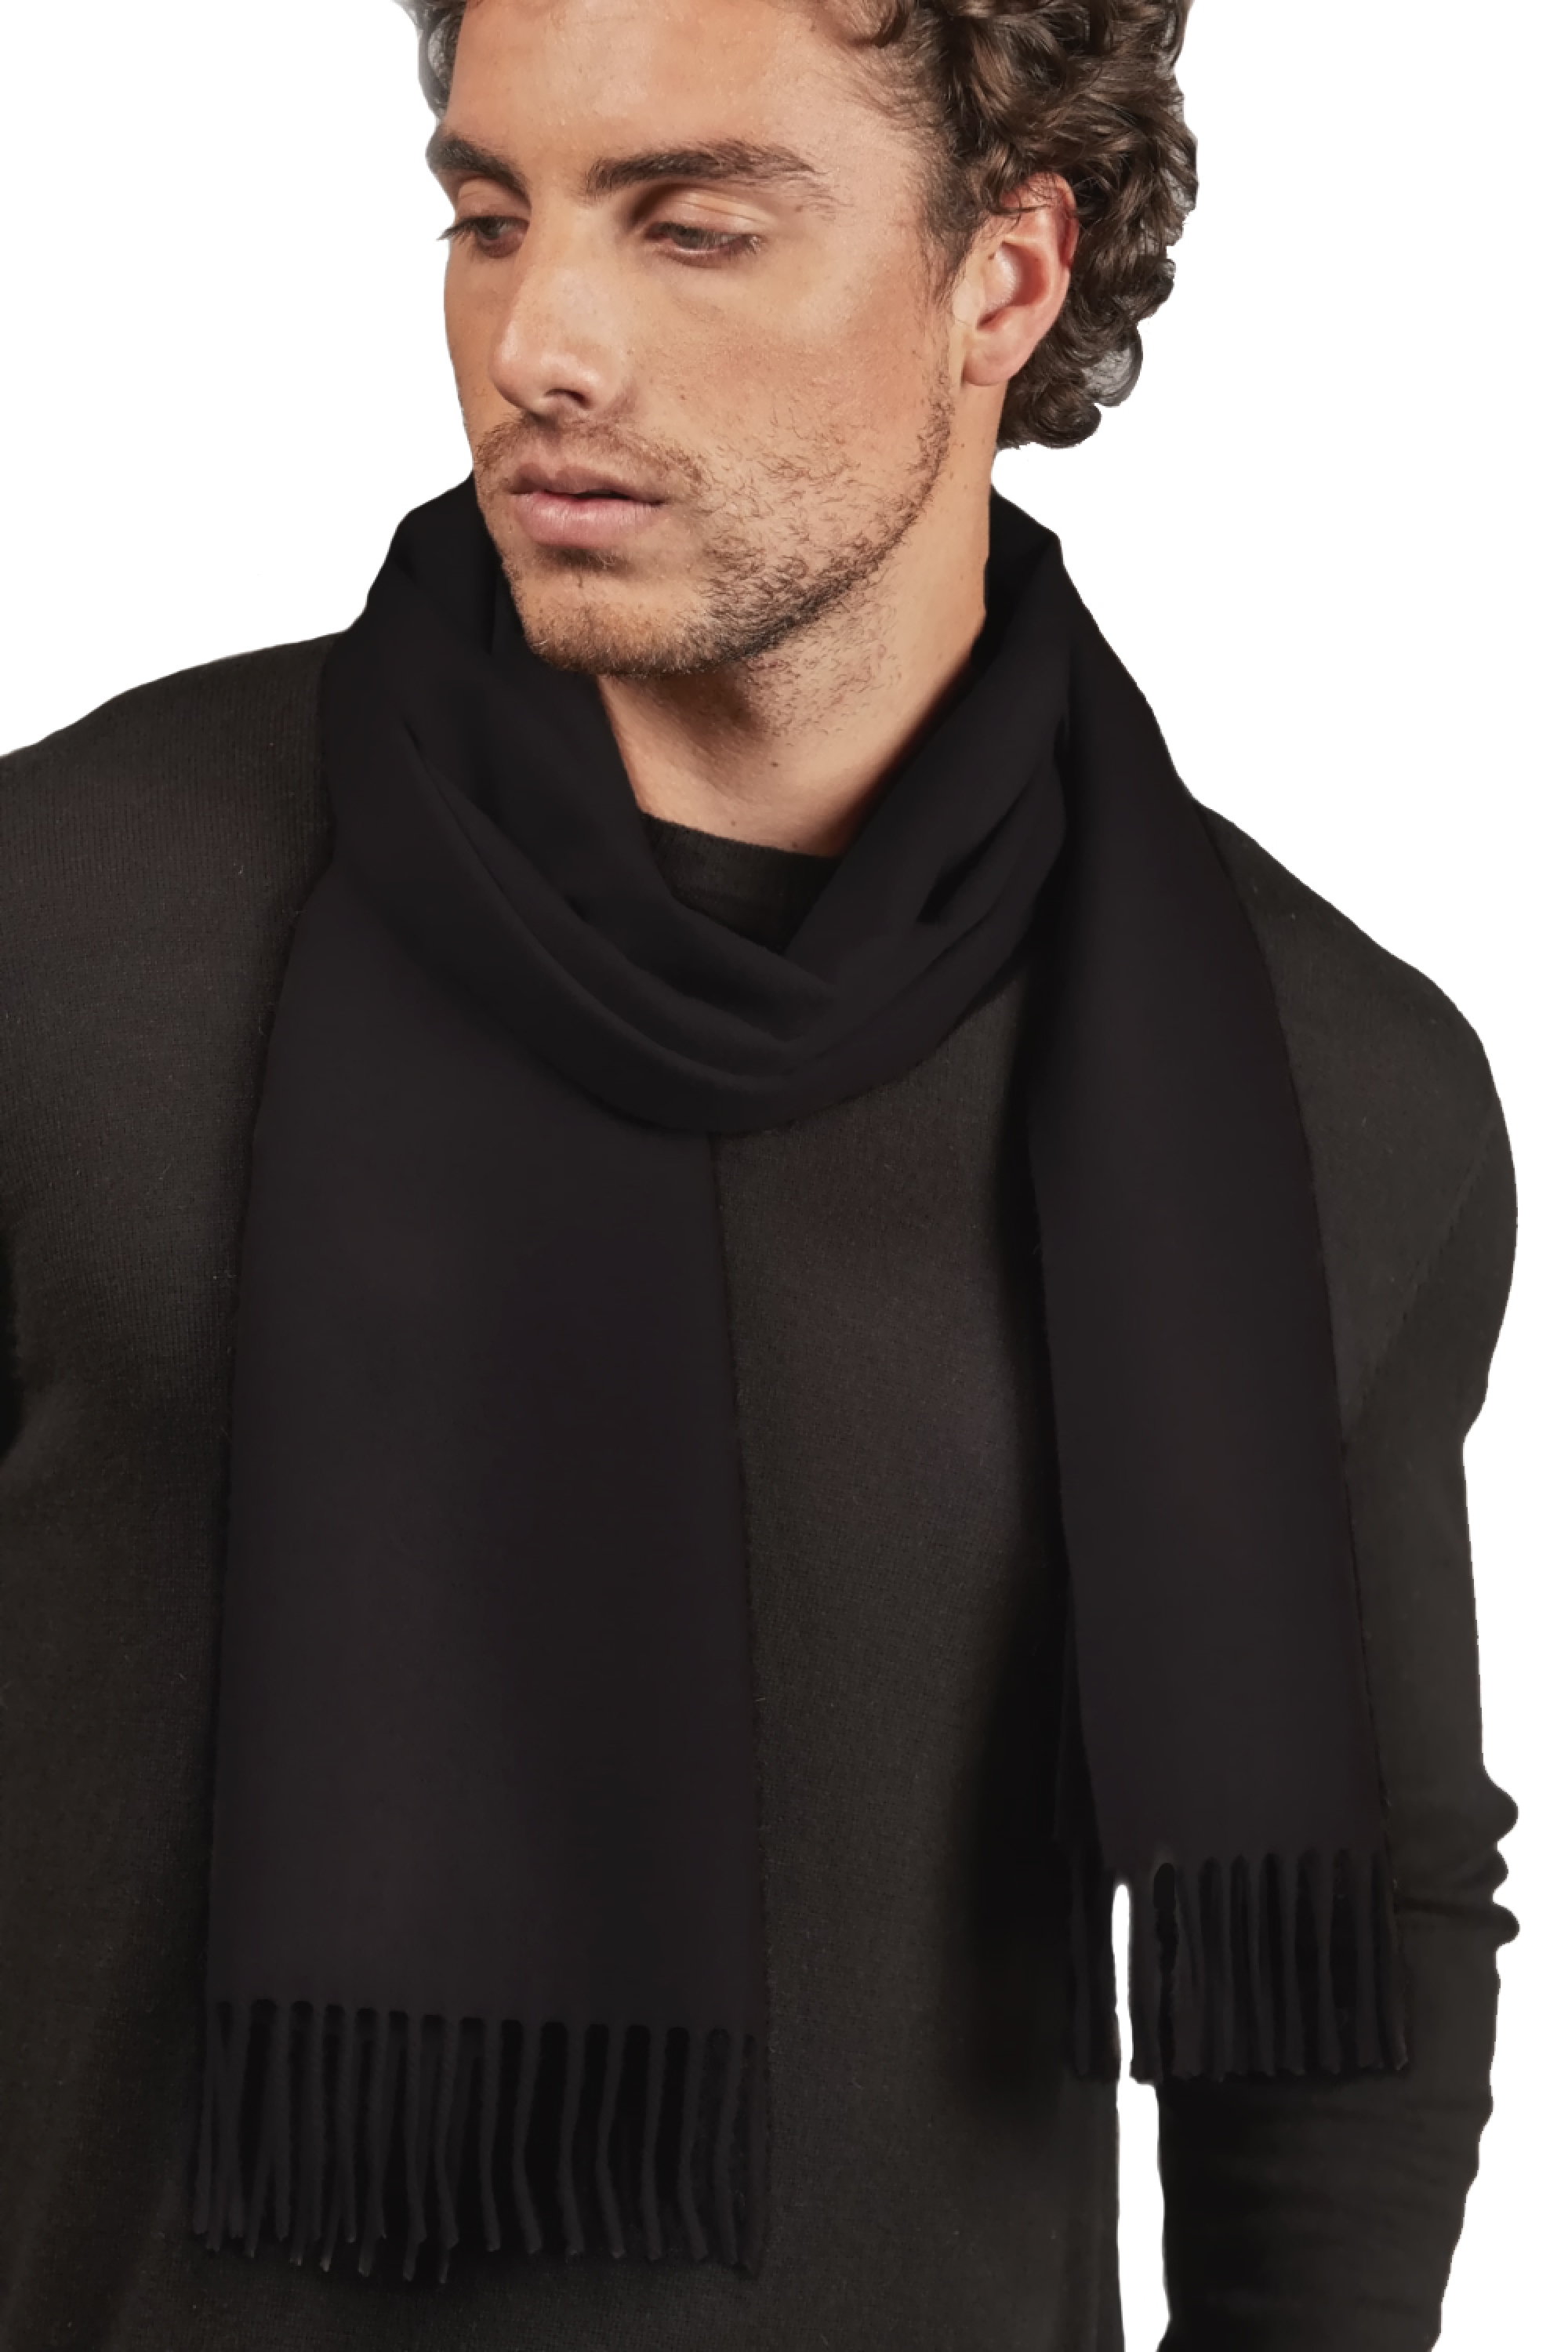 Vikunja kaschmir pullover herren premium pullover vicunazak schwarz 175 x 30 cm